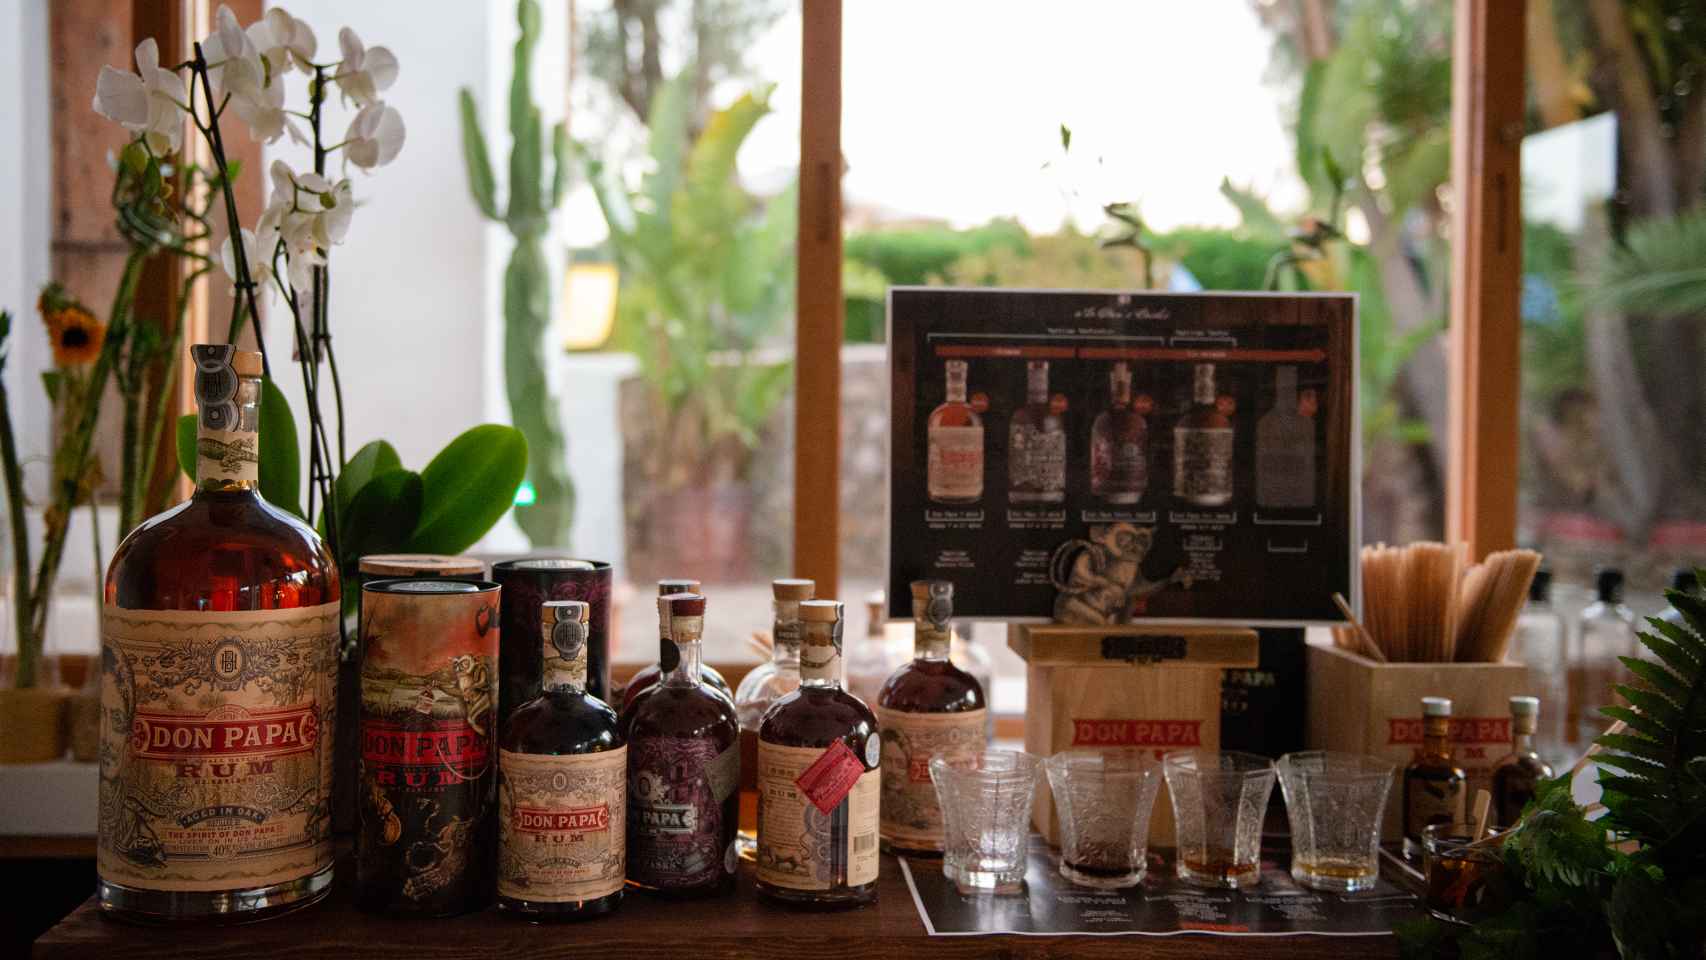 Botellas de Don Papa Rum en Casa Sugarlandia en Ibiza.